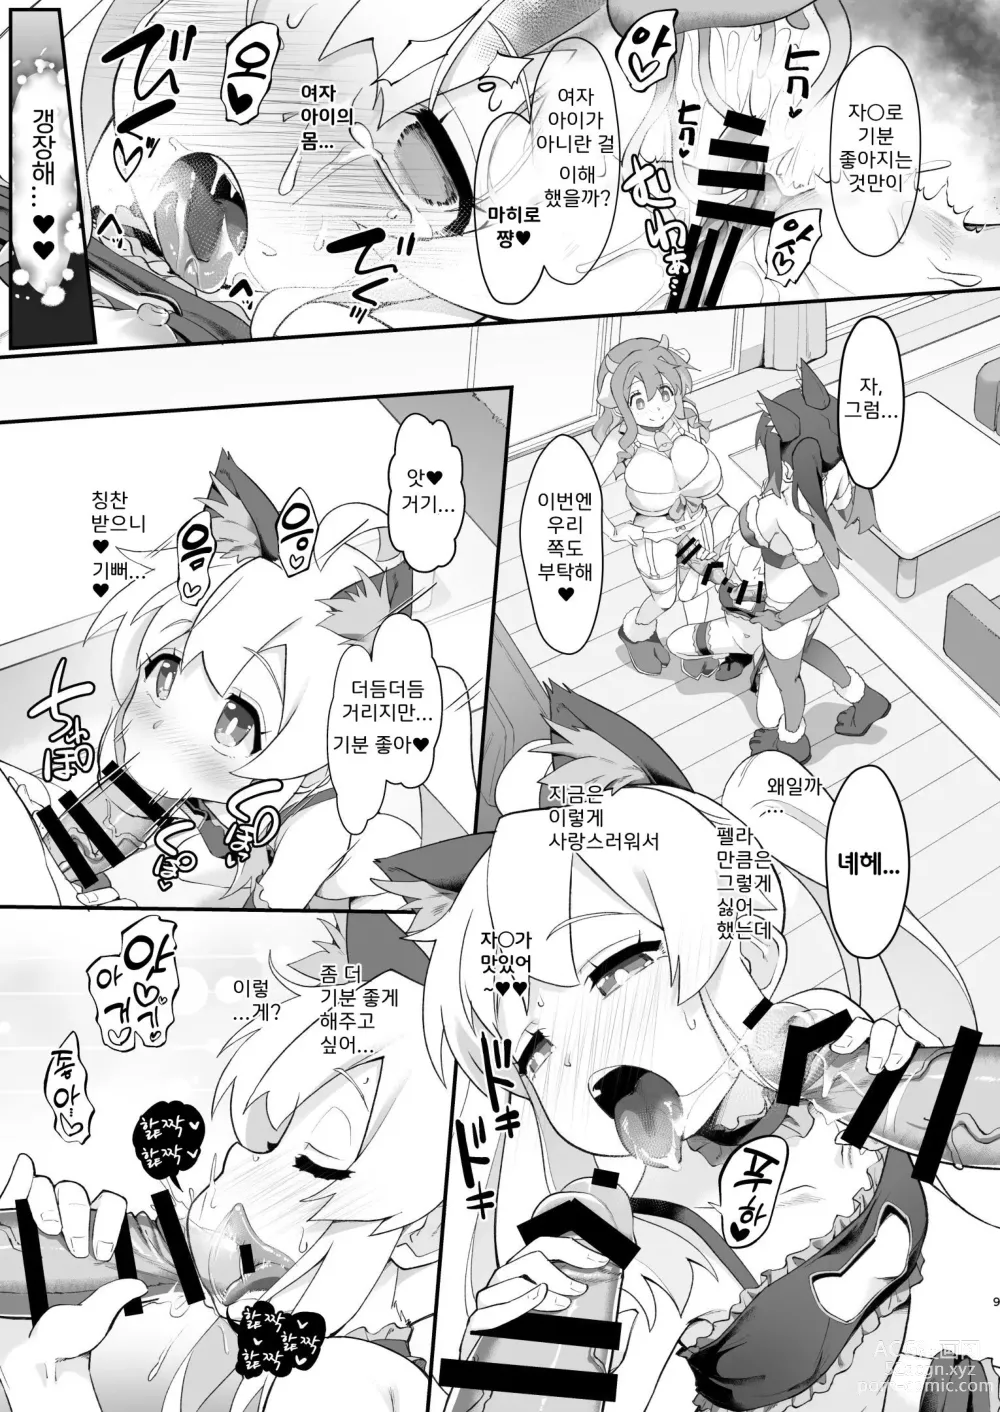 Page 9 of doujinshi 오빠가 못된 아가씨가 되어버려서 이것으로 참교육 하기로 했다